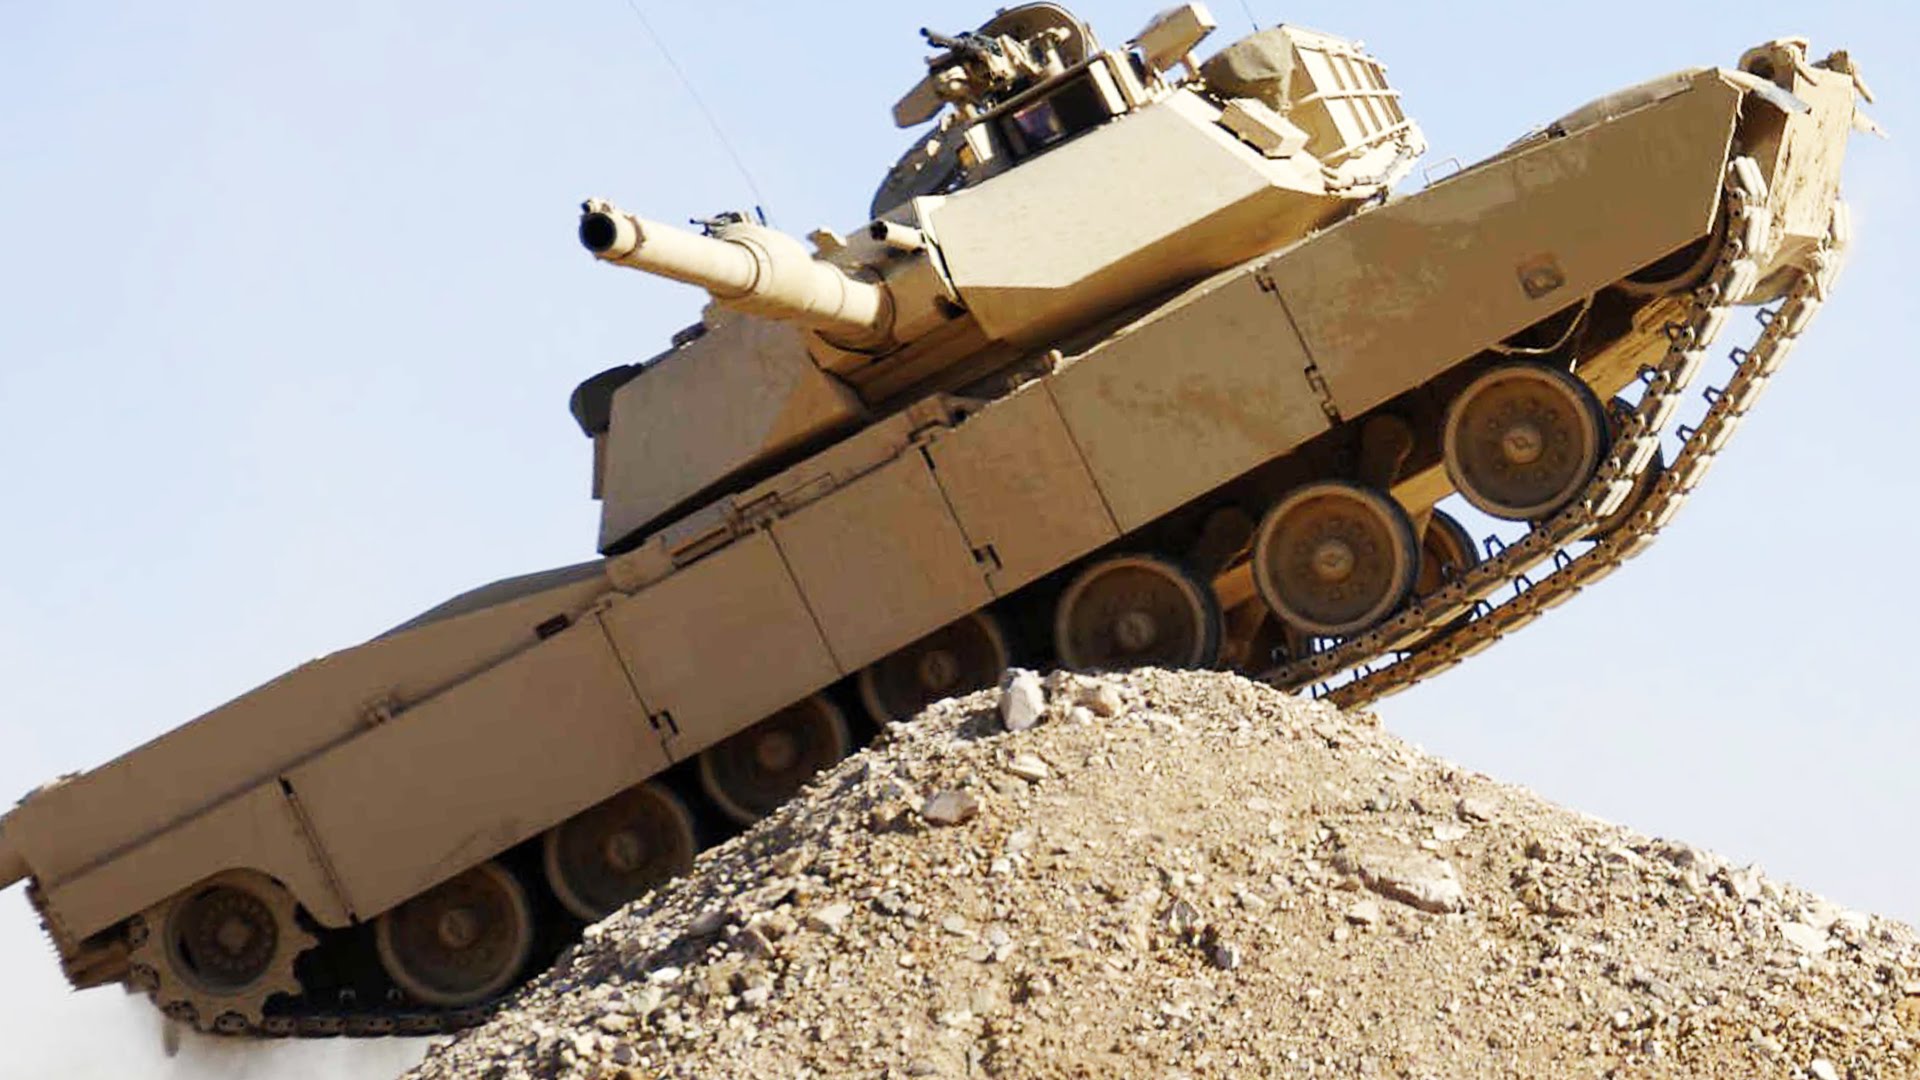 M1 Abrams Backgrounds, Compatible - PC, Mobile, Gadgets| 1920x1080 px